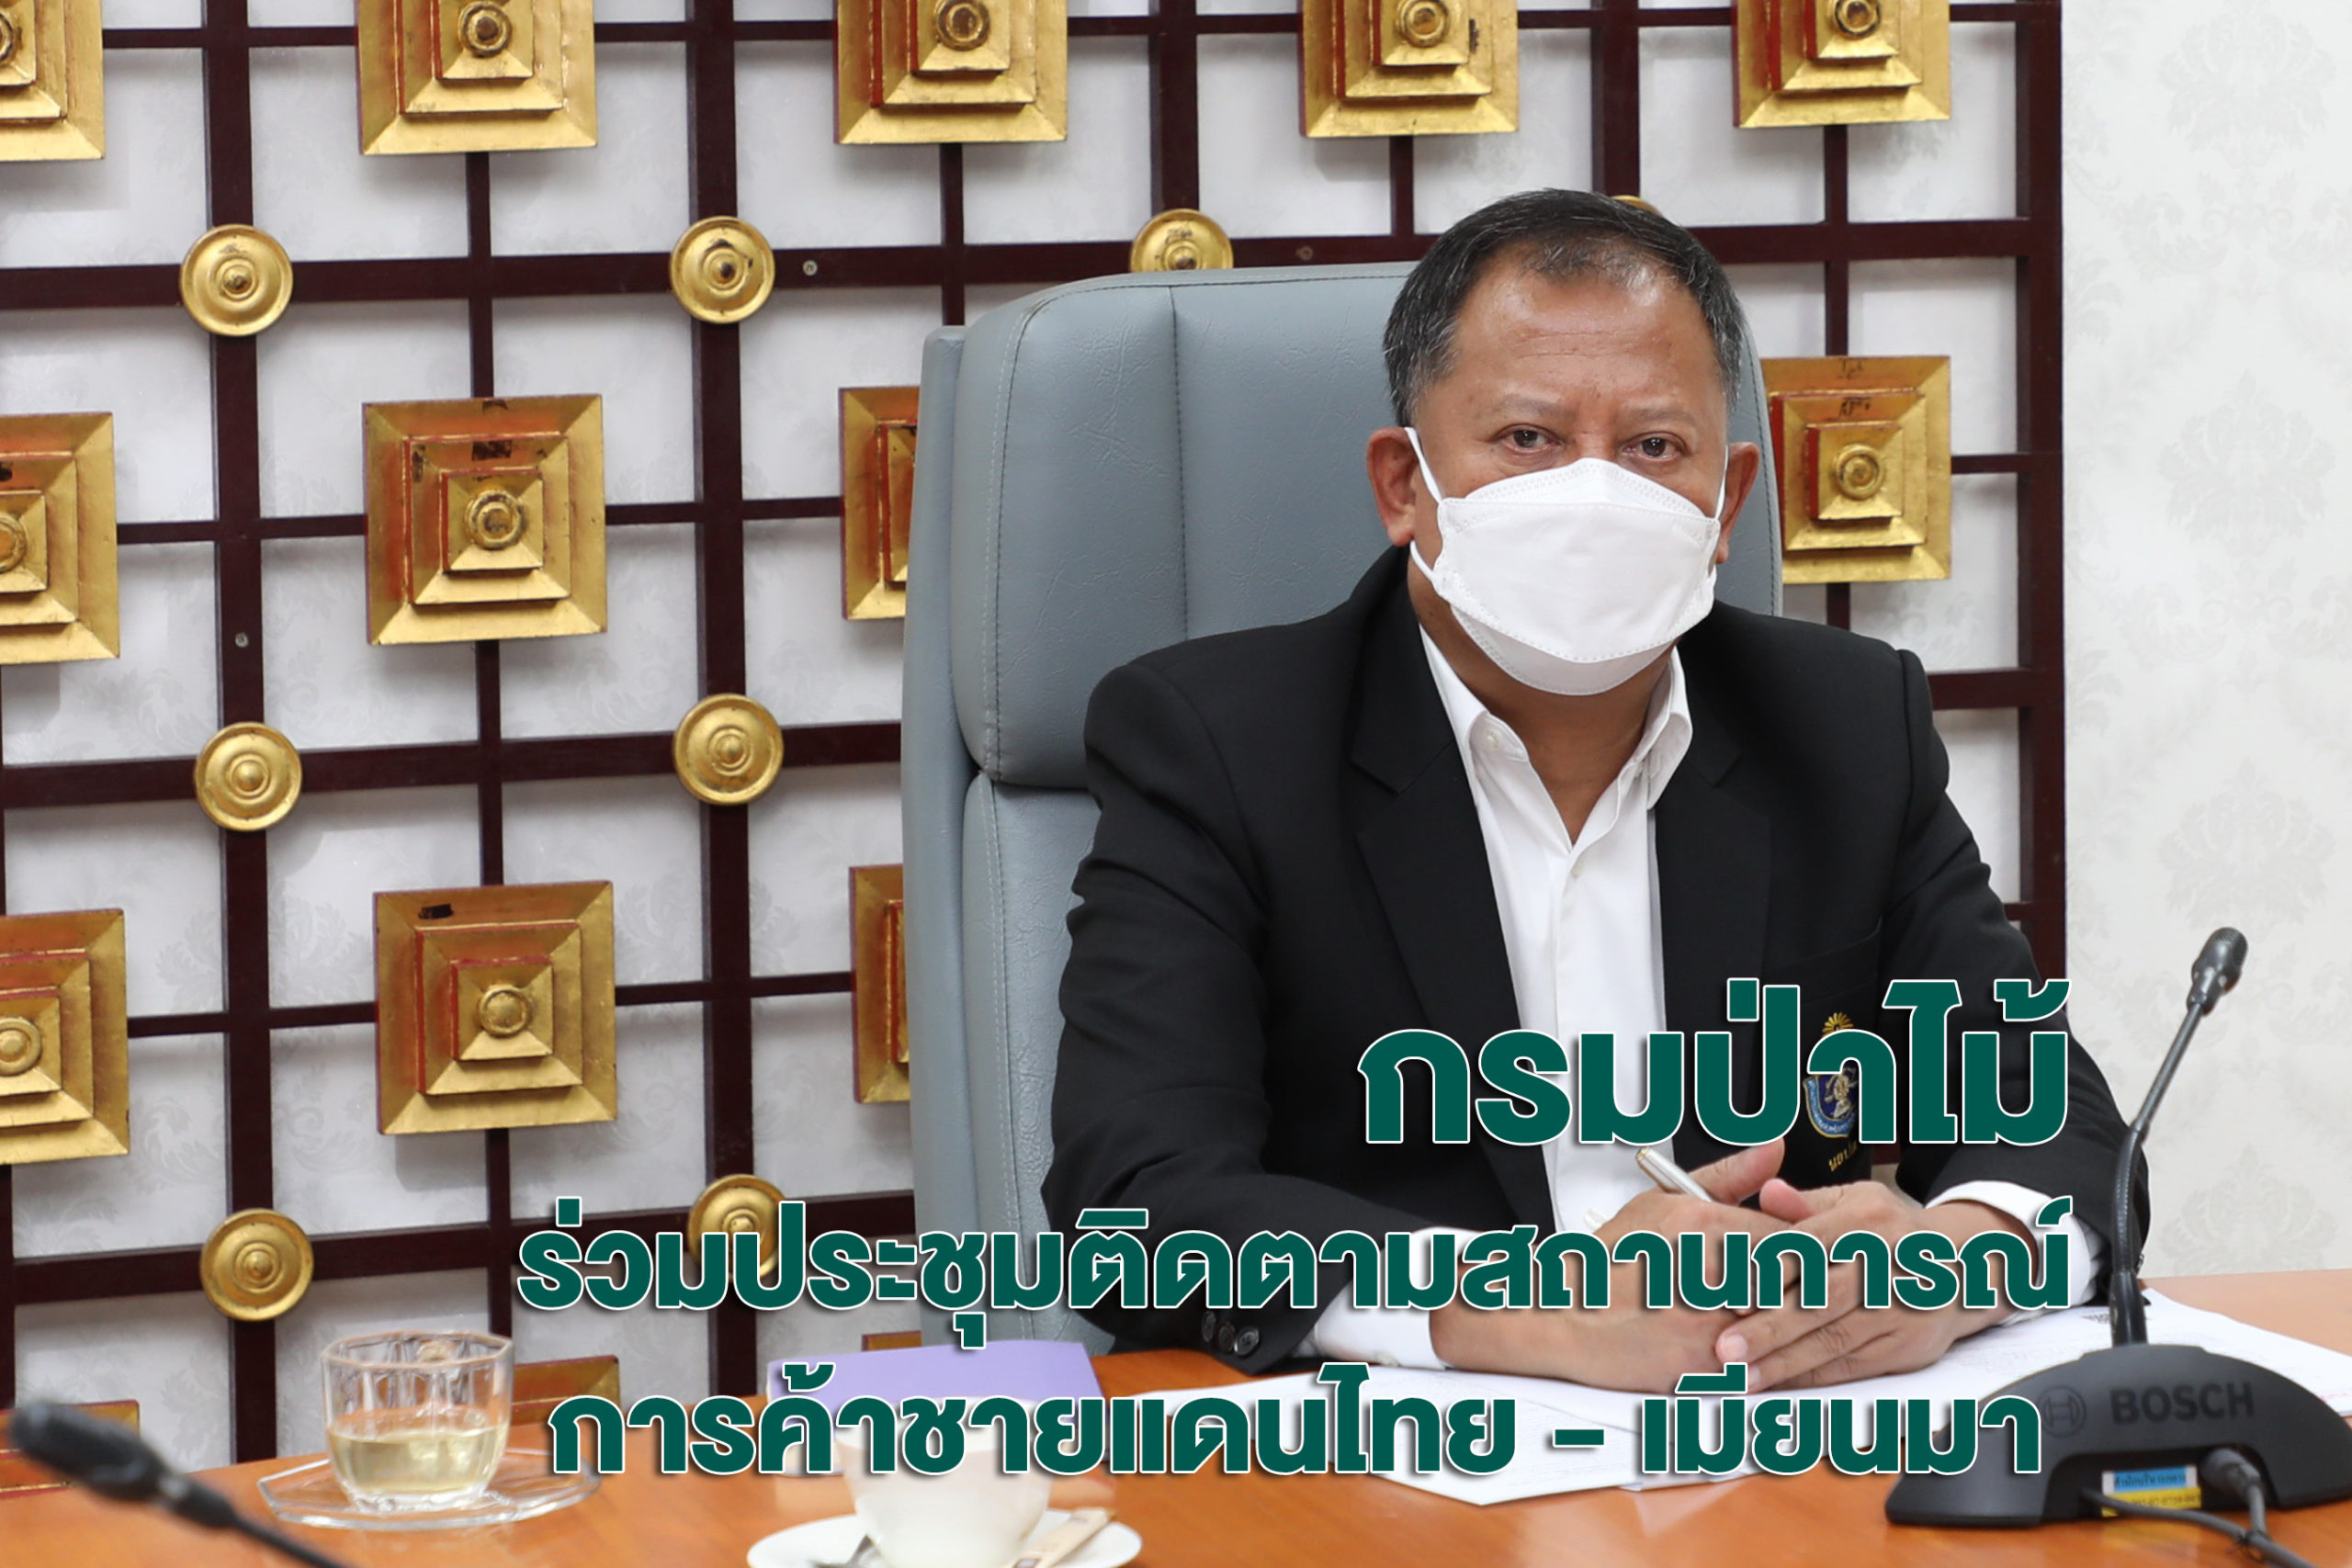 นายธวัชชัย ลัดกรูด ผู้ตรวจราชการกรมป่าไม้ ร่วมประชุมติดตามสถานการณ์การค้าชายแดนไทย - เมียนมา